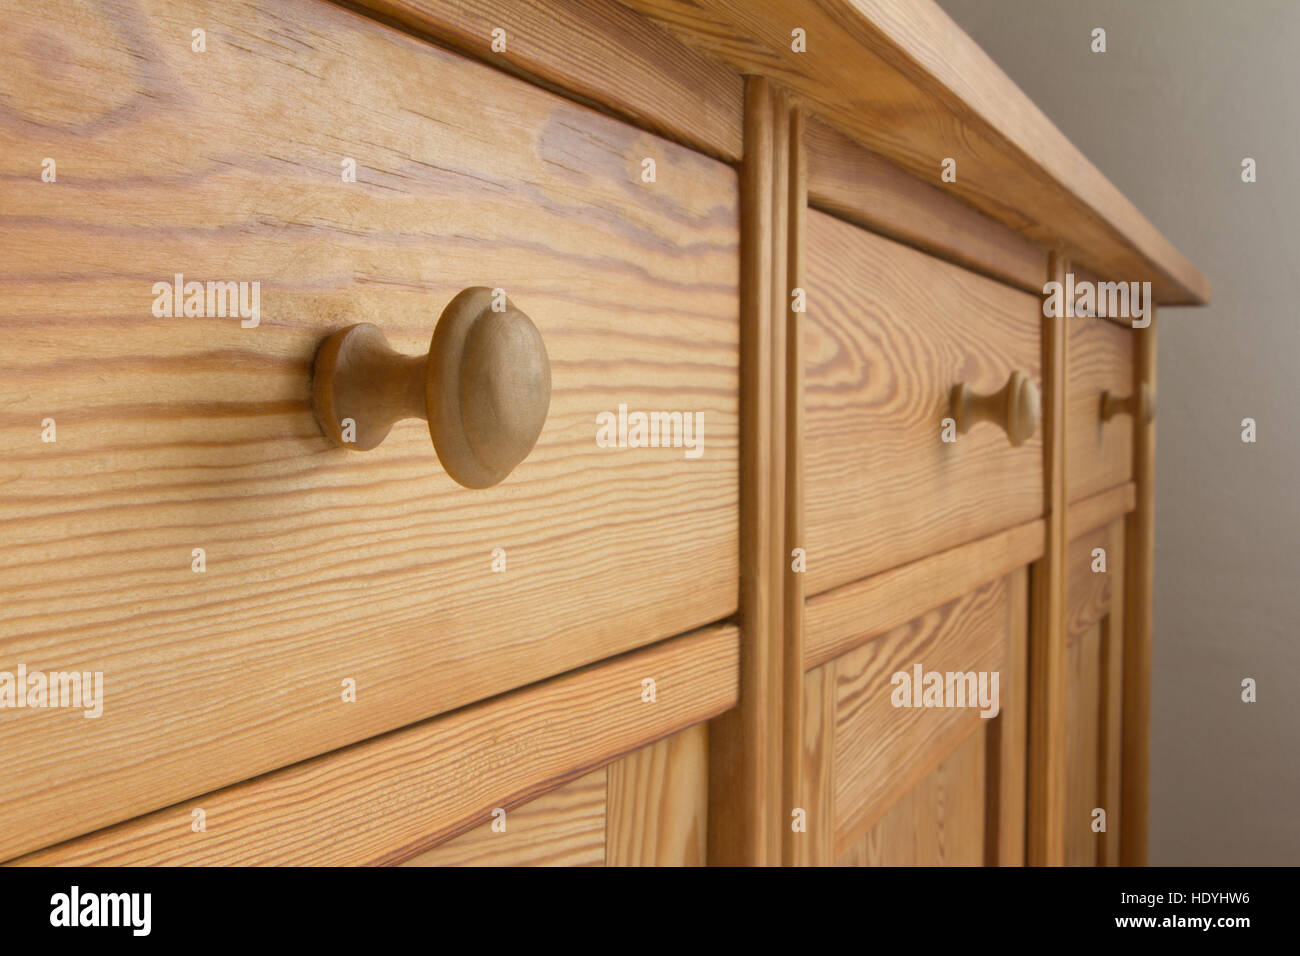 Trois tiroirs d'une poitrine vintage avec boutons ou poignées brun naturel, bois tendre, les vieux meubles en bois, Close up Banque D'Images